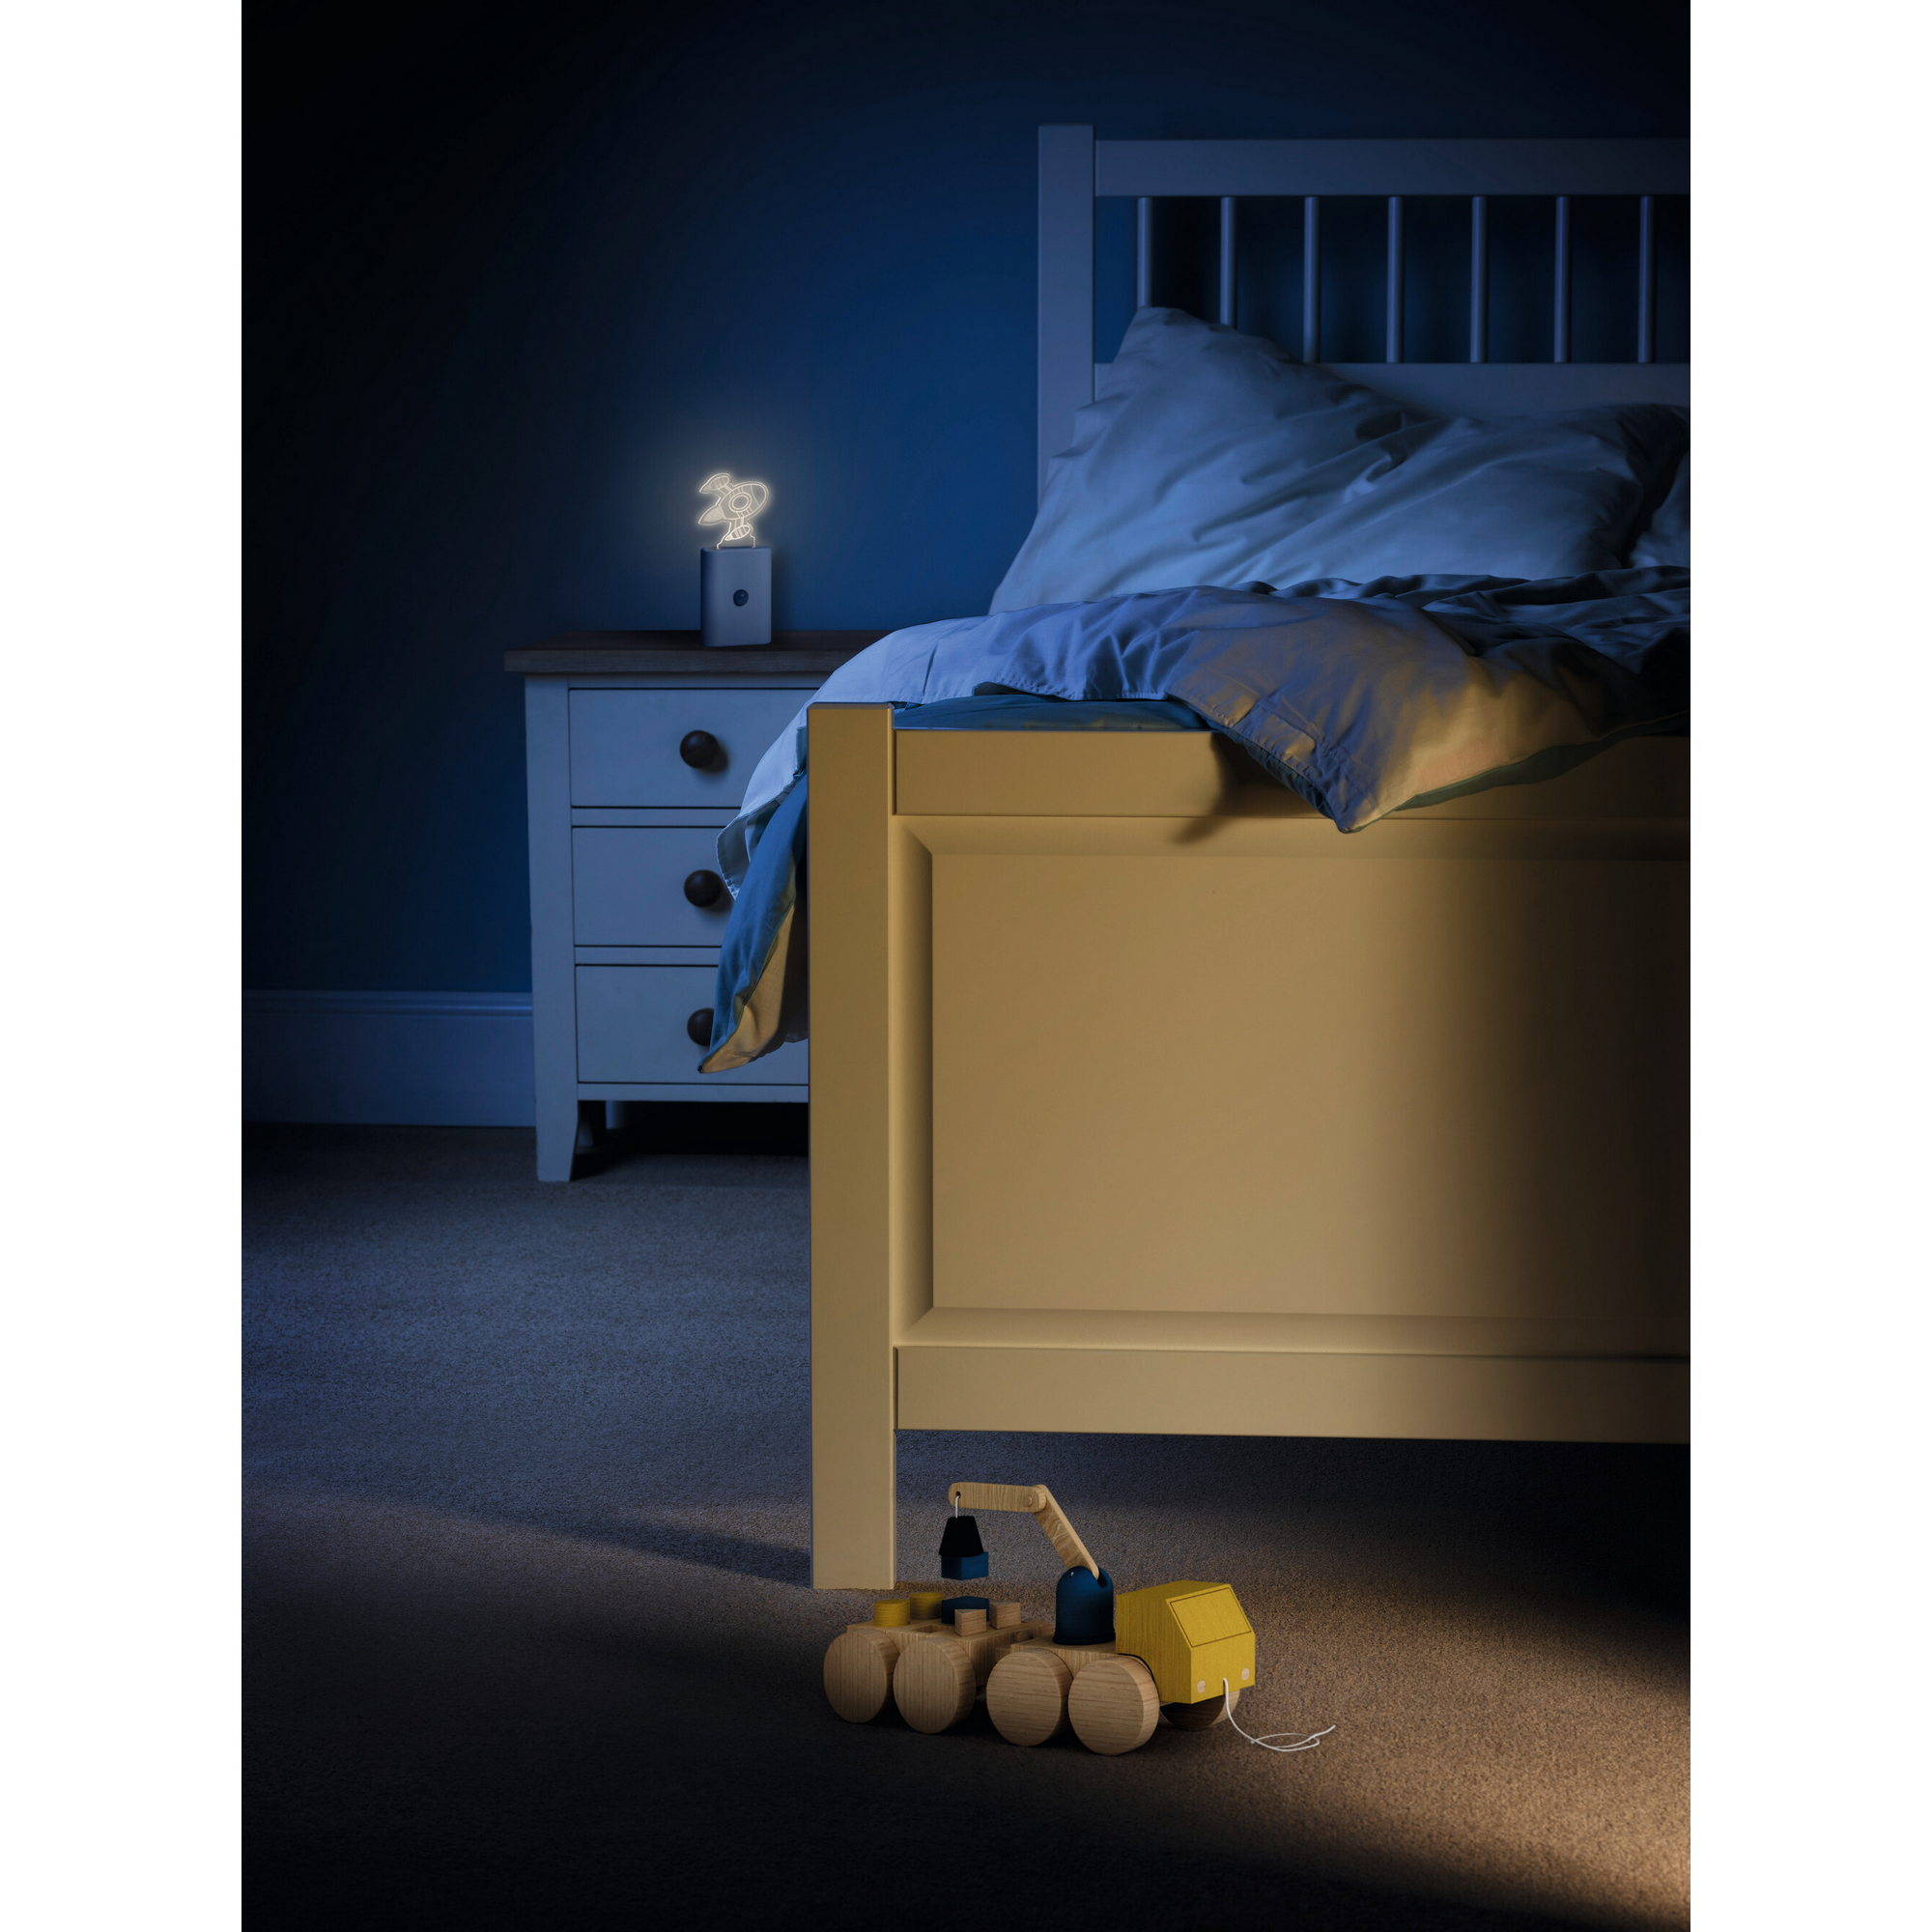 LED-Nachtlicht 'Nightlux Cartoon' weiß Bewegungssensor 6 x 24 x 8 mm + product picture